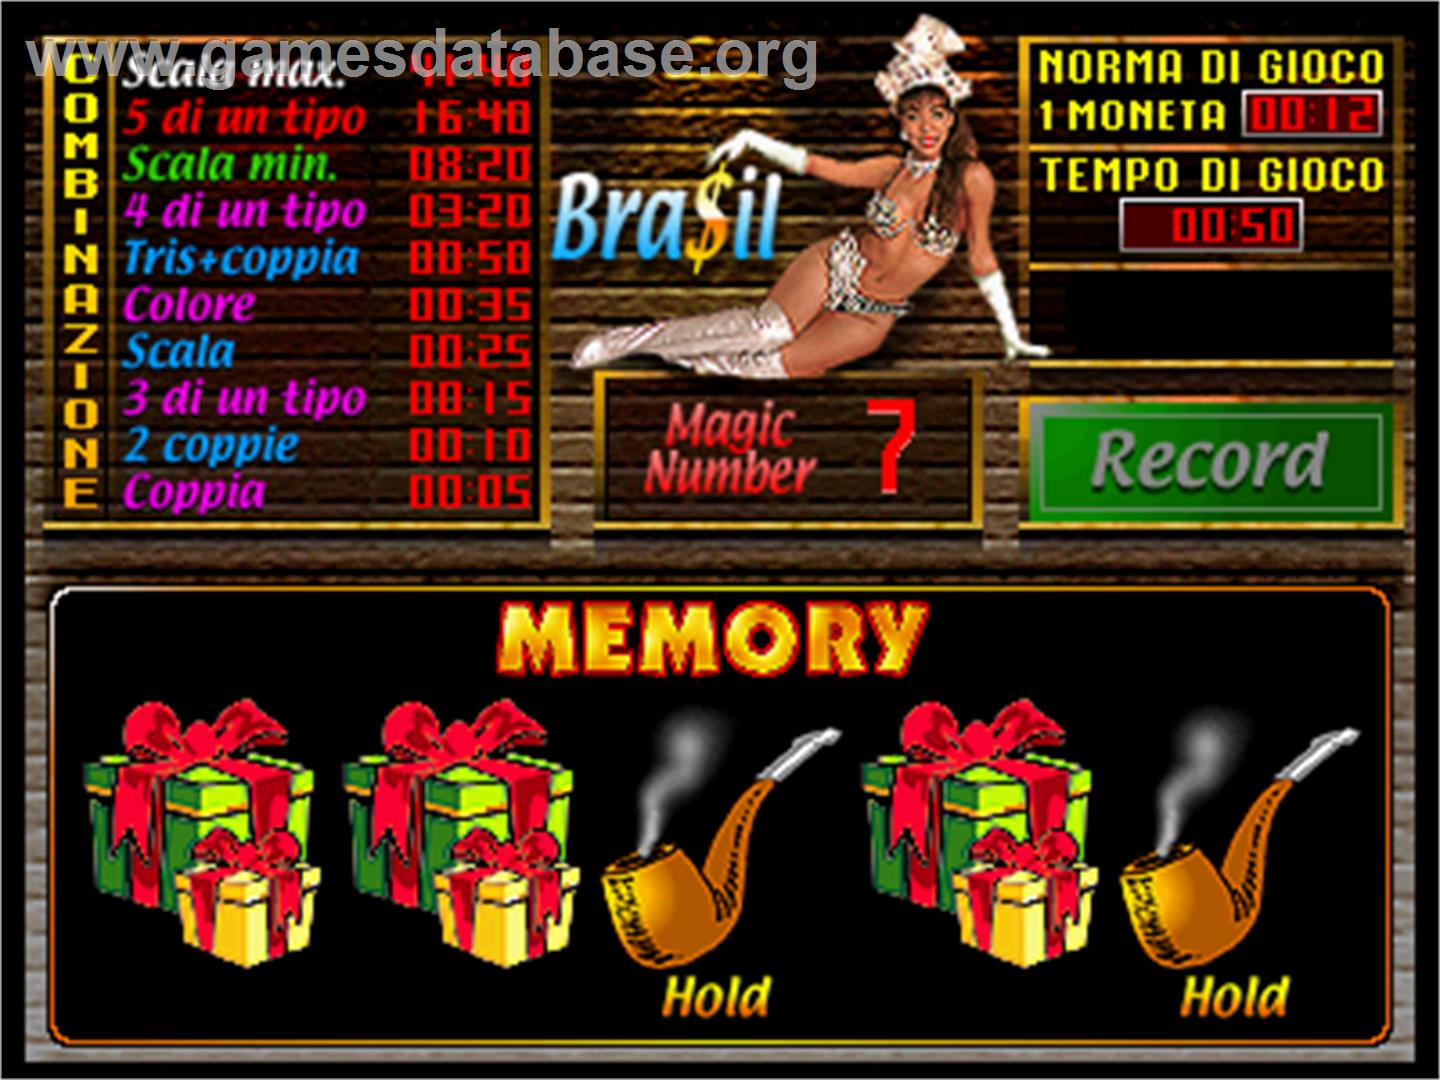 Bra$il - Arcade - Artwork - In Game